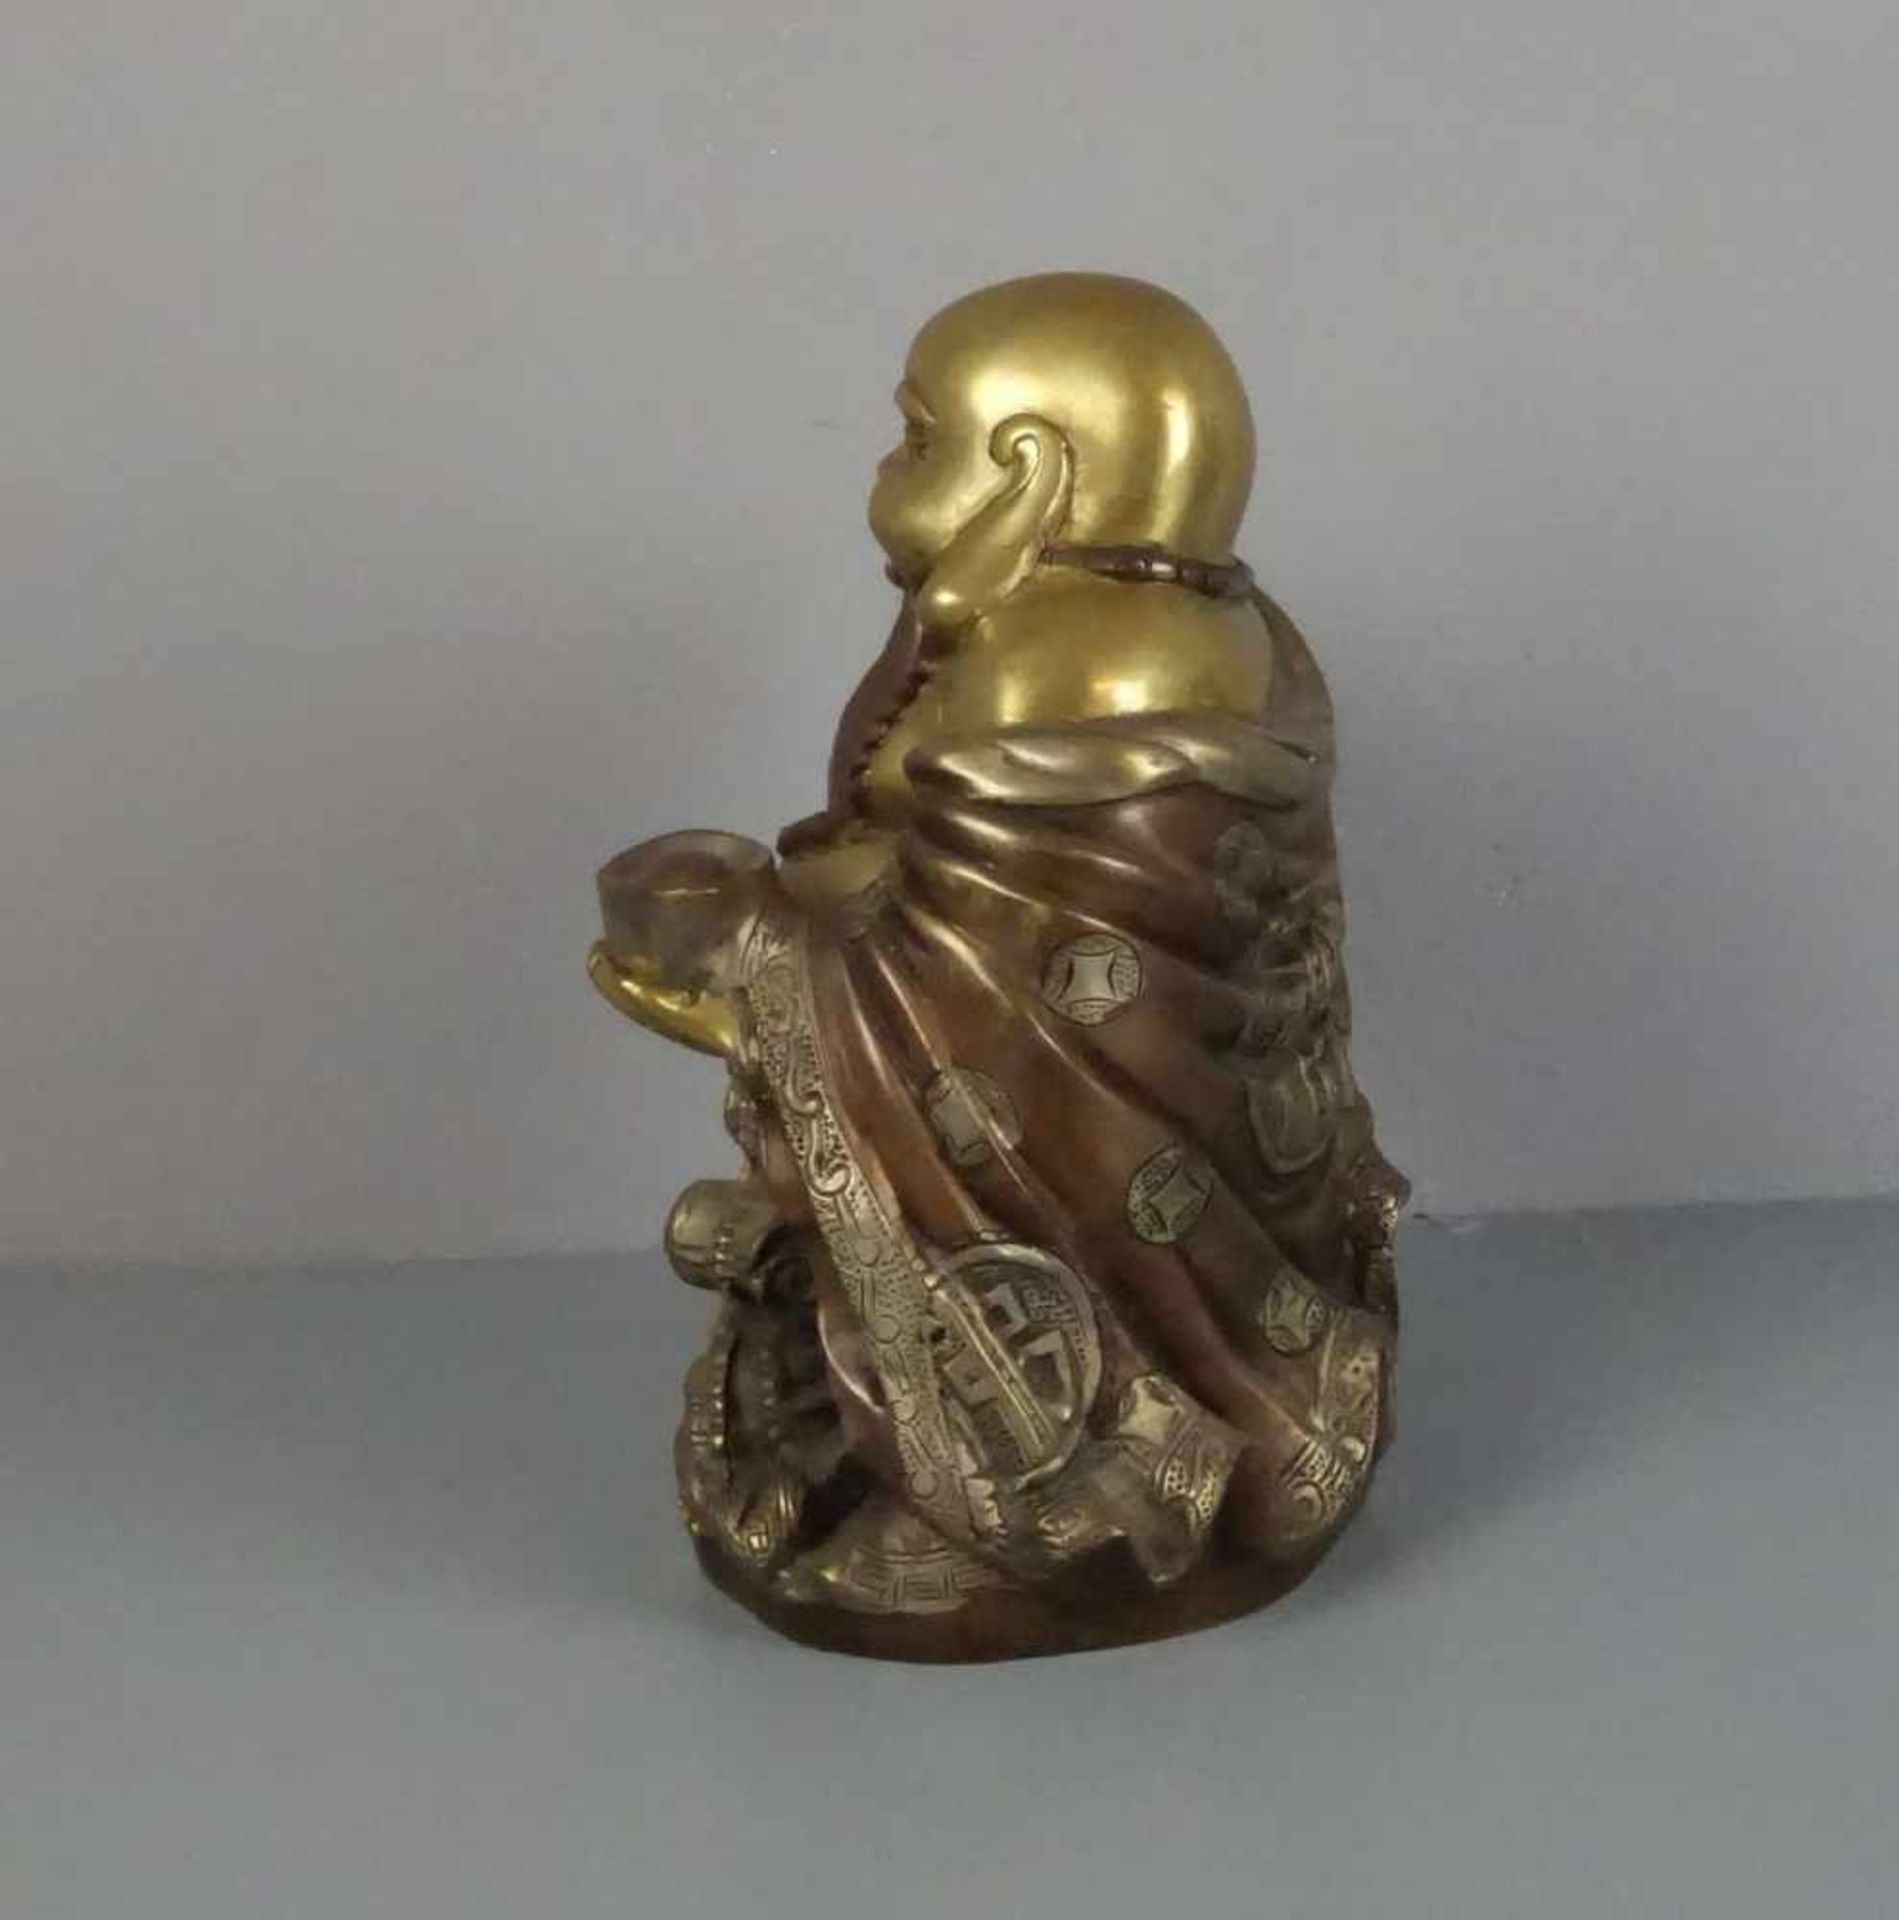 SKULPTUR: Buddha "Budai" / Glücksbuddha, Bronze, gold-, silber- und kupferfarben patiniert. Buddha - Bild 4 aus 5